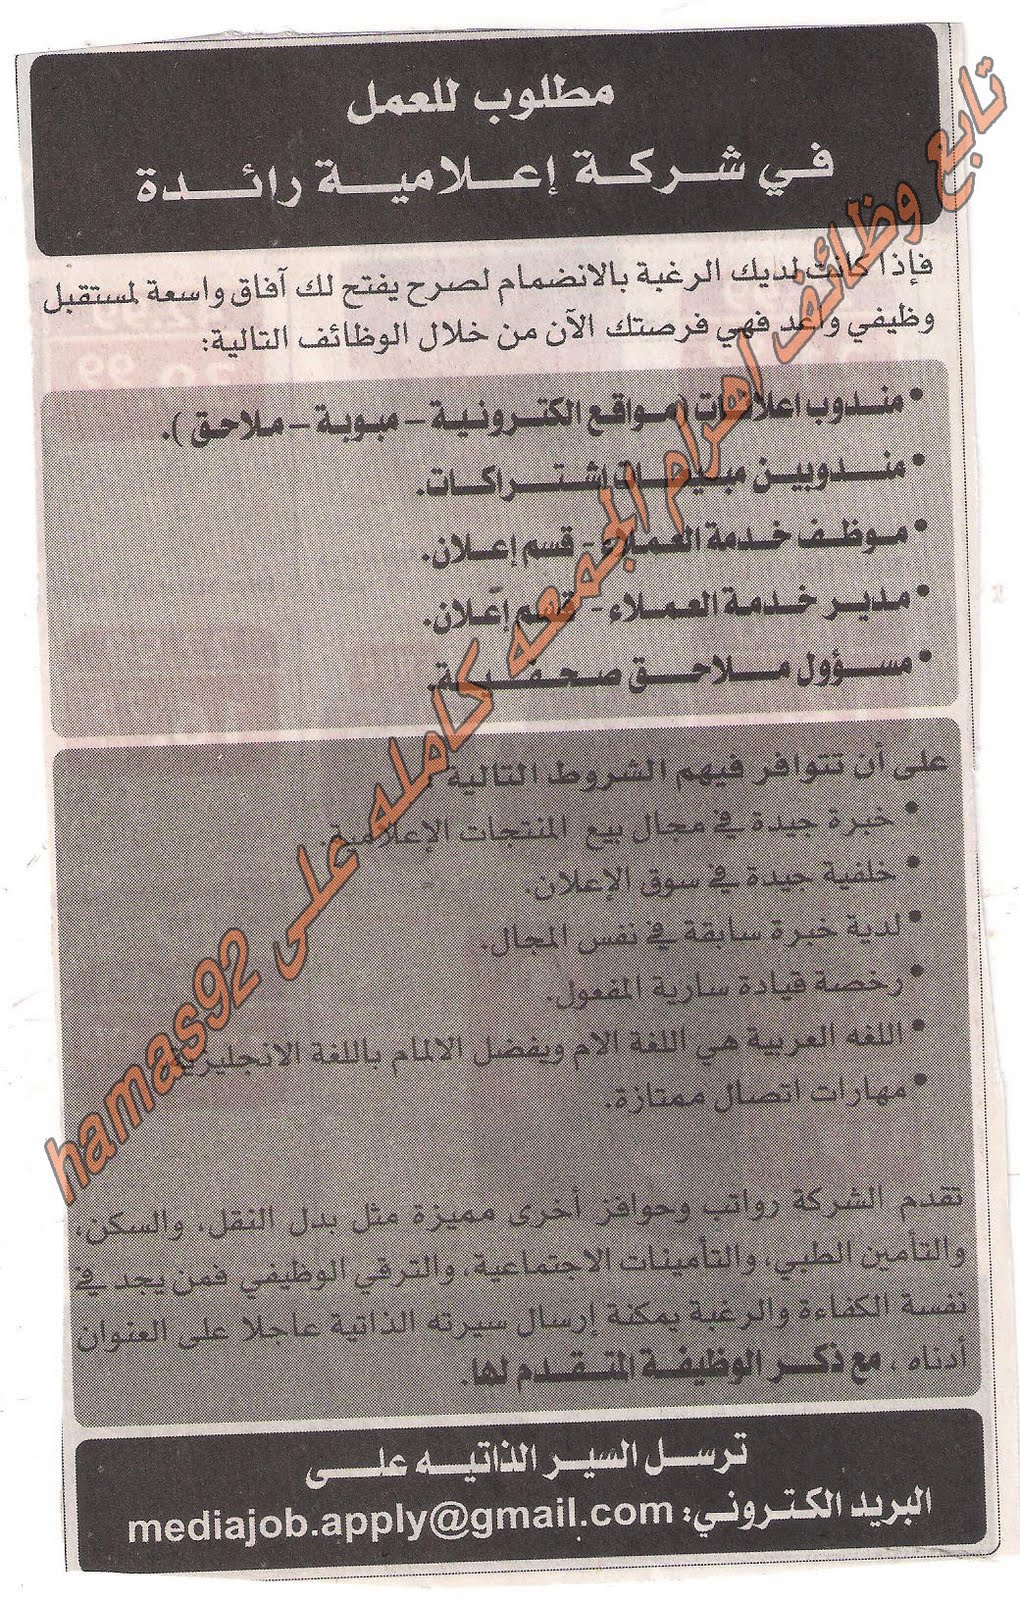 وظائف جريدة الاهرام الجمعة 26 اغسطس 2011 Picture+004